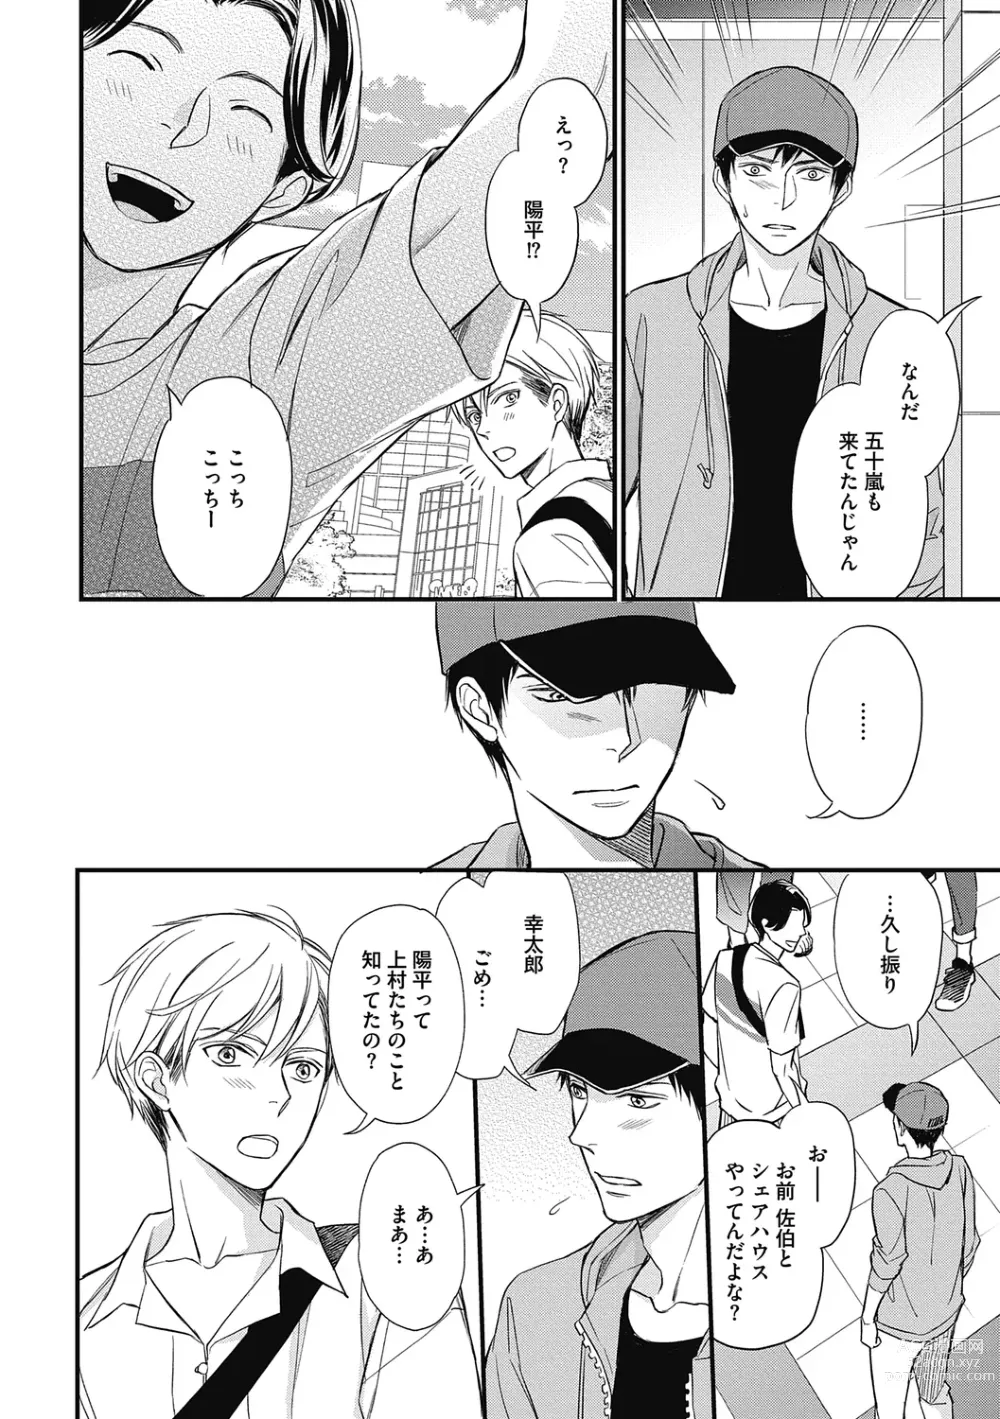 Page 184 of manga Saeki-kun wa Are ga Shitai